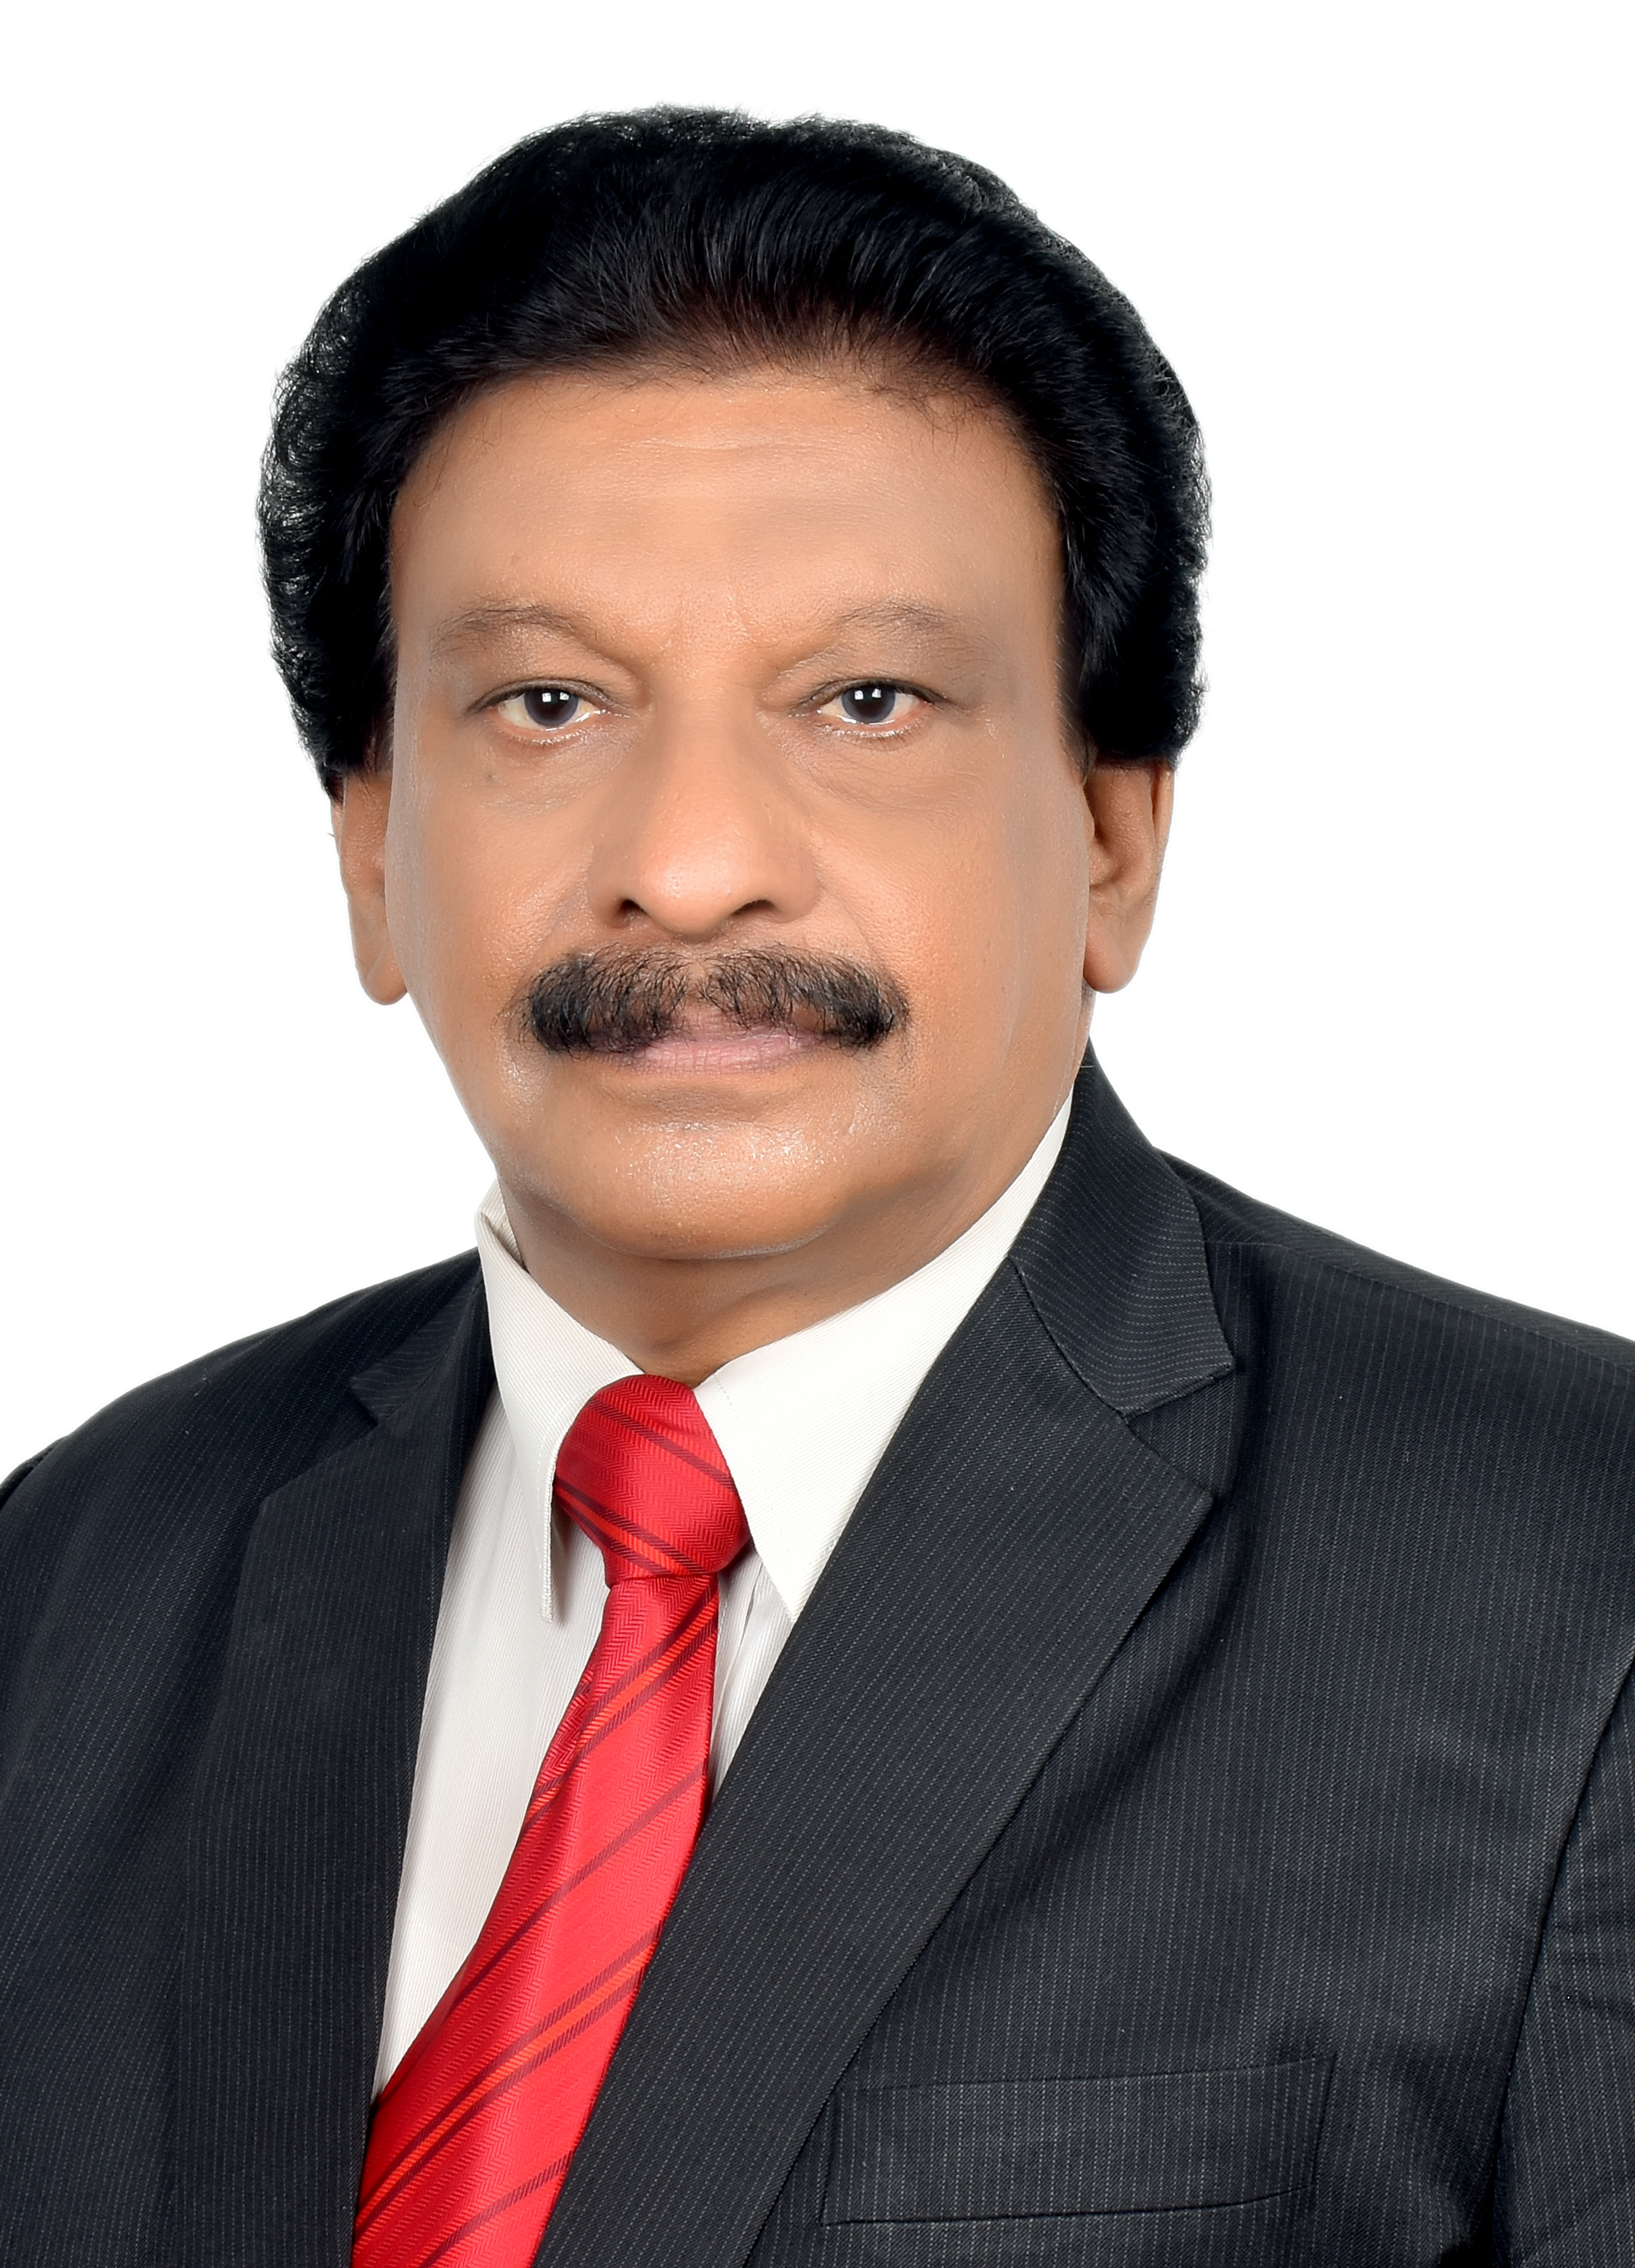 Dr. Sankaran Nair Rajagopal